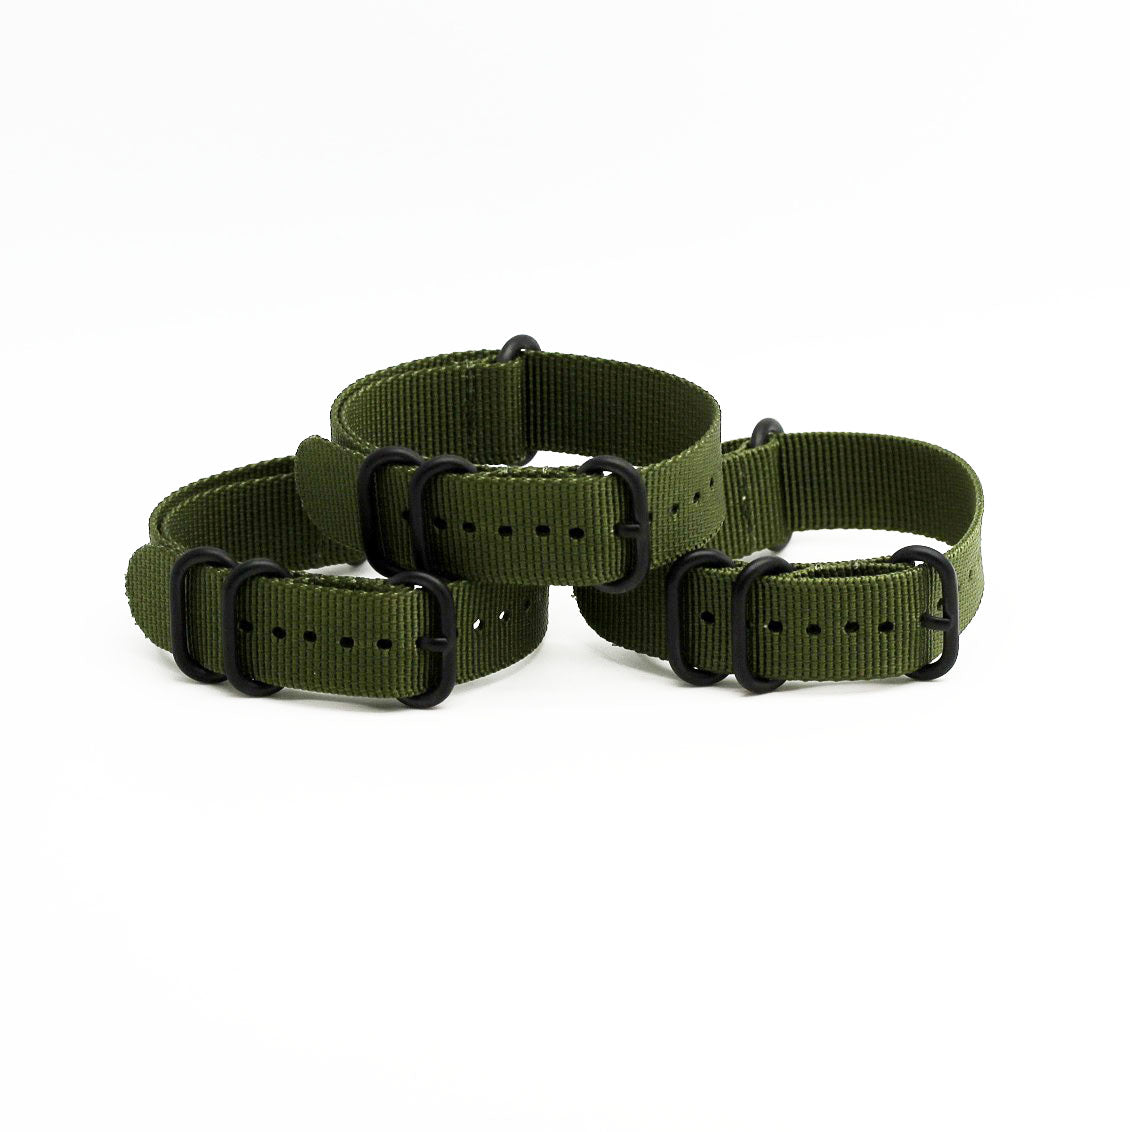 1 x Nato Armband grün / olive  –  20mm – passend für diverse Sport Modelle